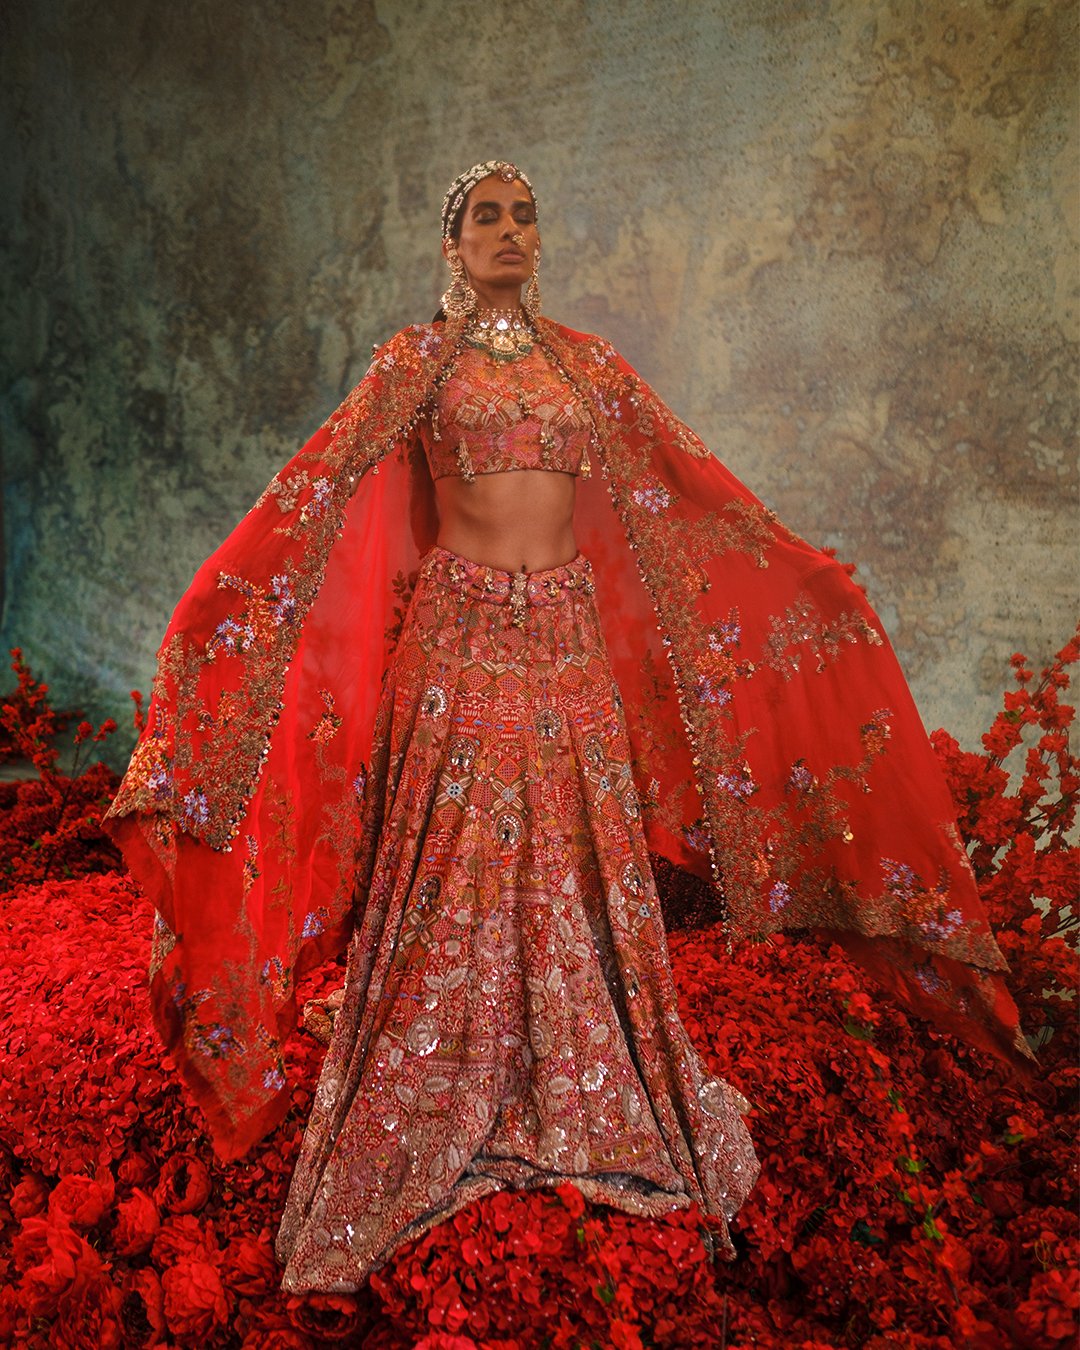 Breathtaking Anamika Khanna Bridal Lehengas We Are Currently Crushing On |  Indian bridal outfits, Wedding lehenga designs, Bridal outfits